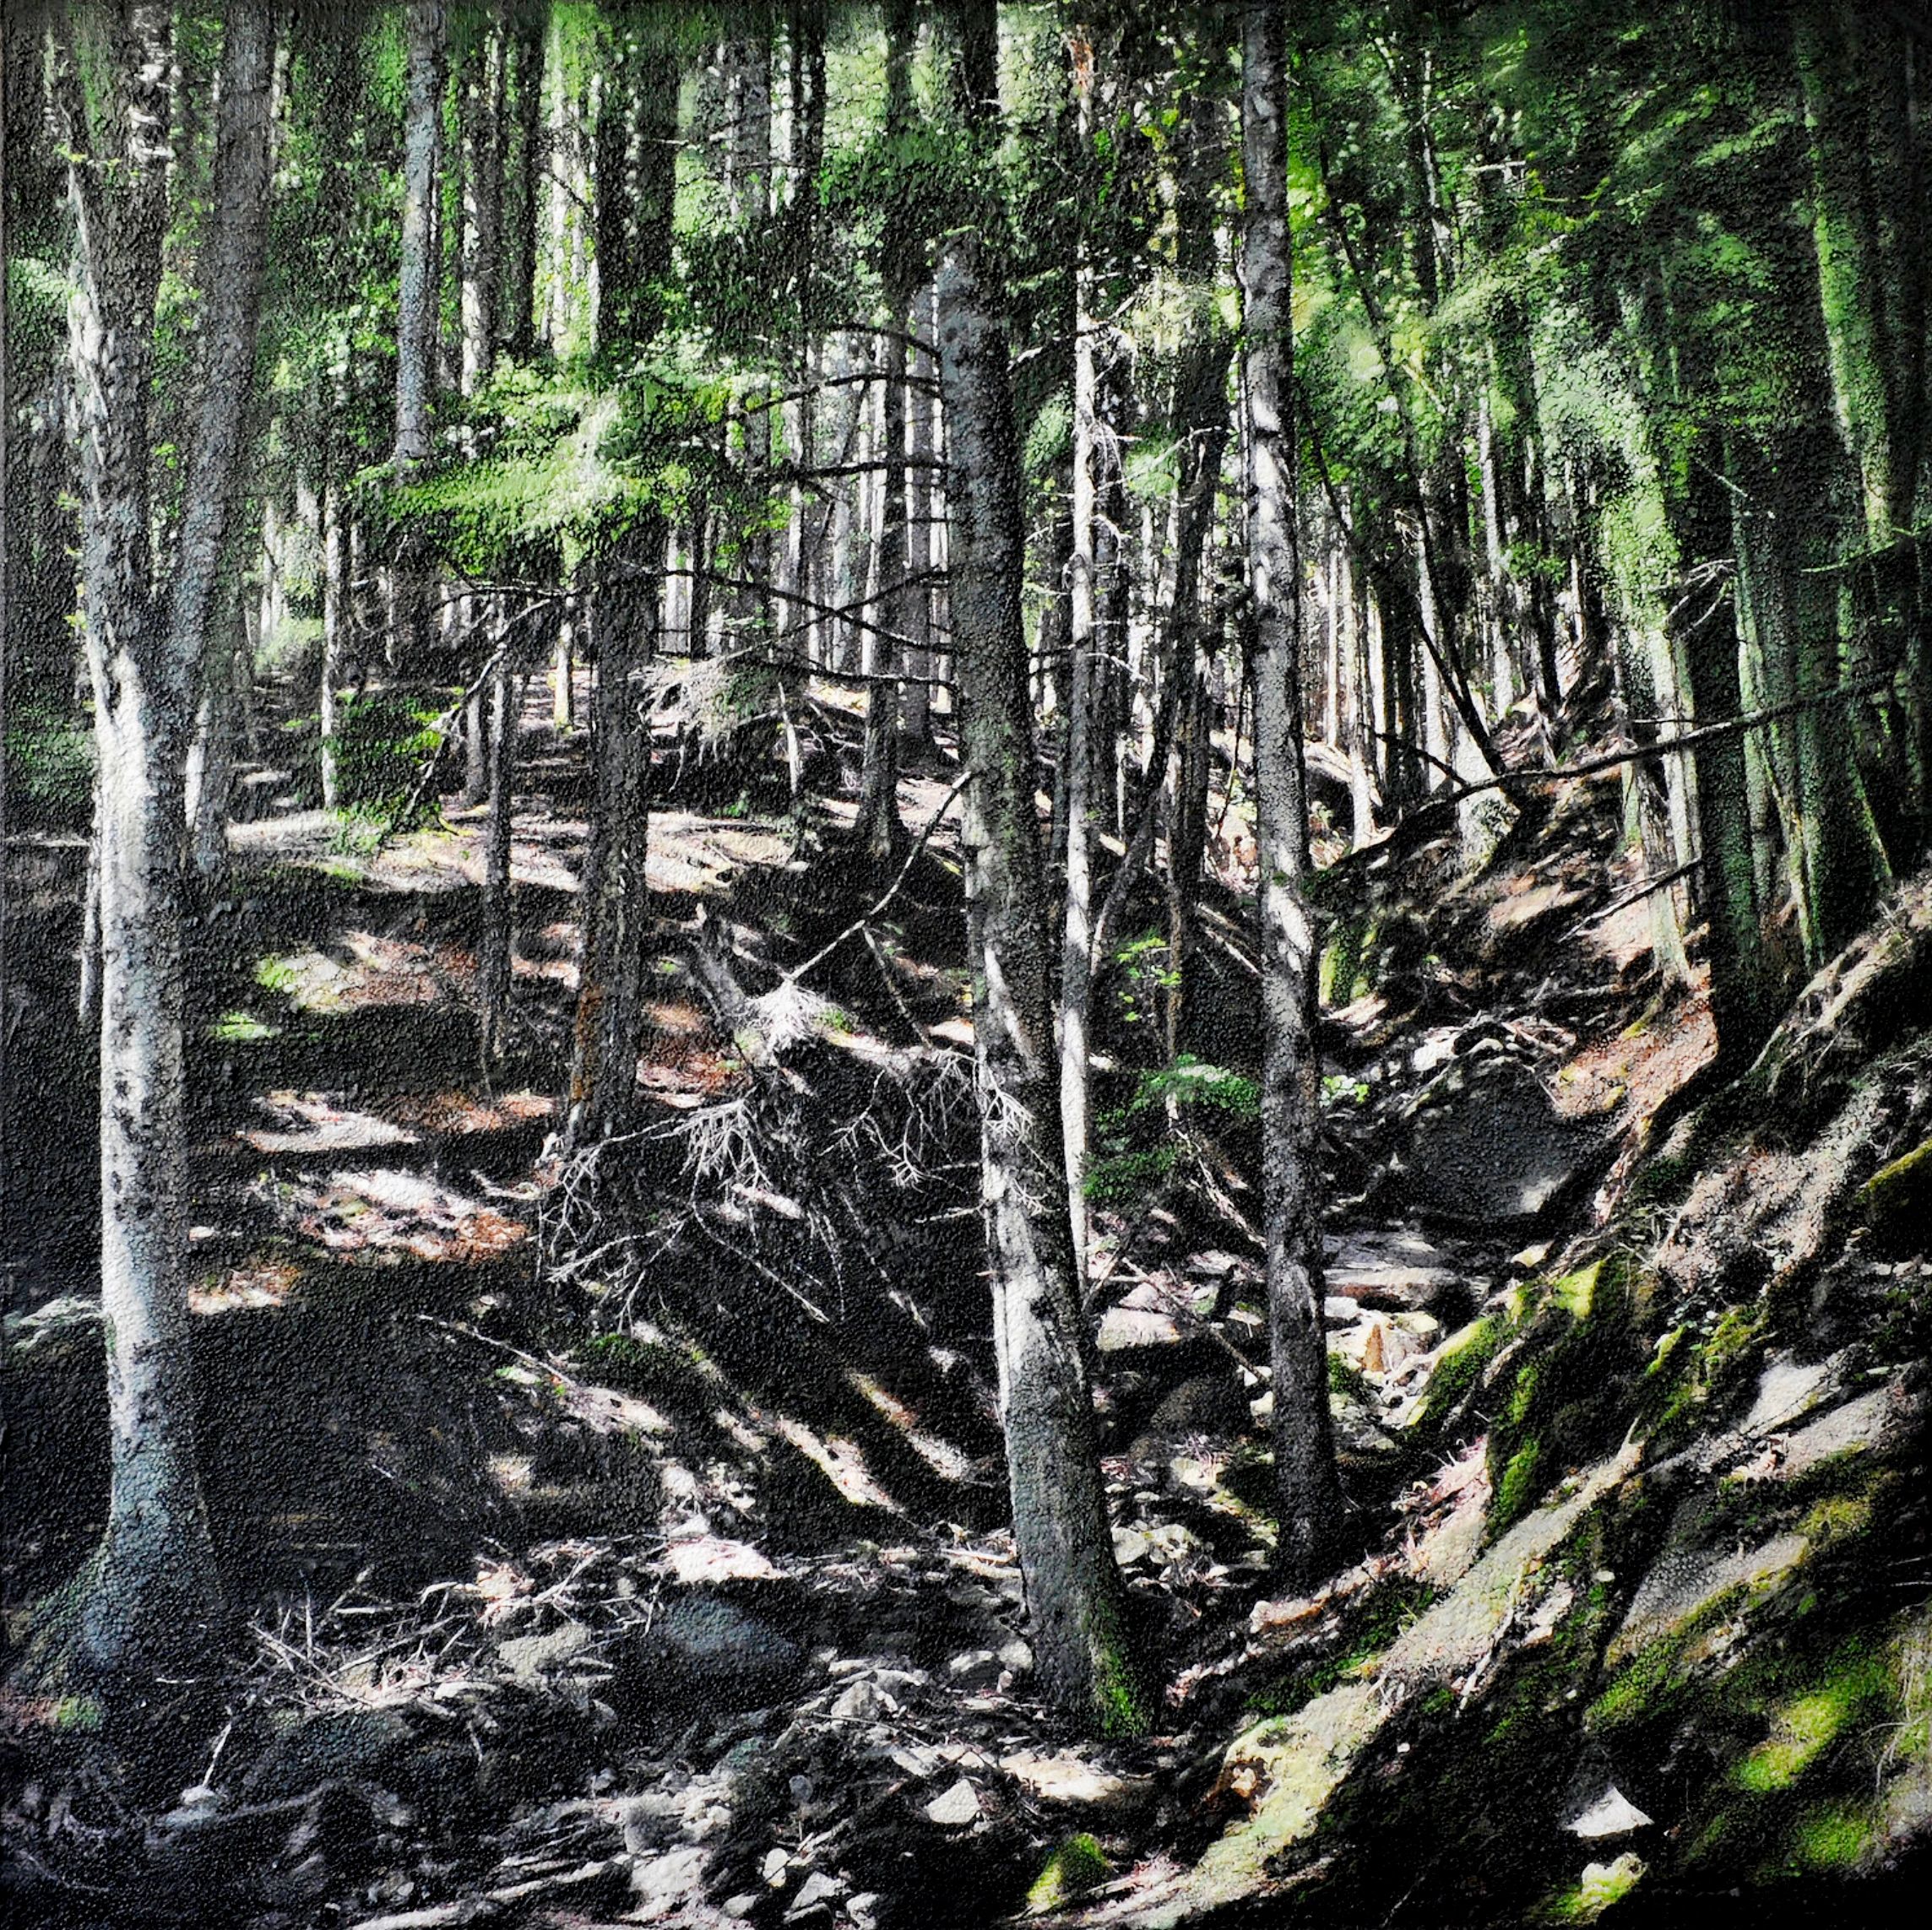 Riserva Statale Badia Prataglia", de Karin Vermeer, es una combinación y procesamiento digital de fotografías, pinturas y collage en una obra de arte única, muy estructurada y detallada. Casi puedes sumergirte en este paisaje forestal.